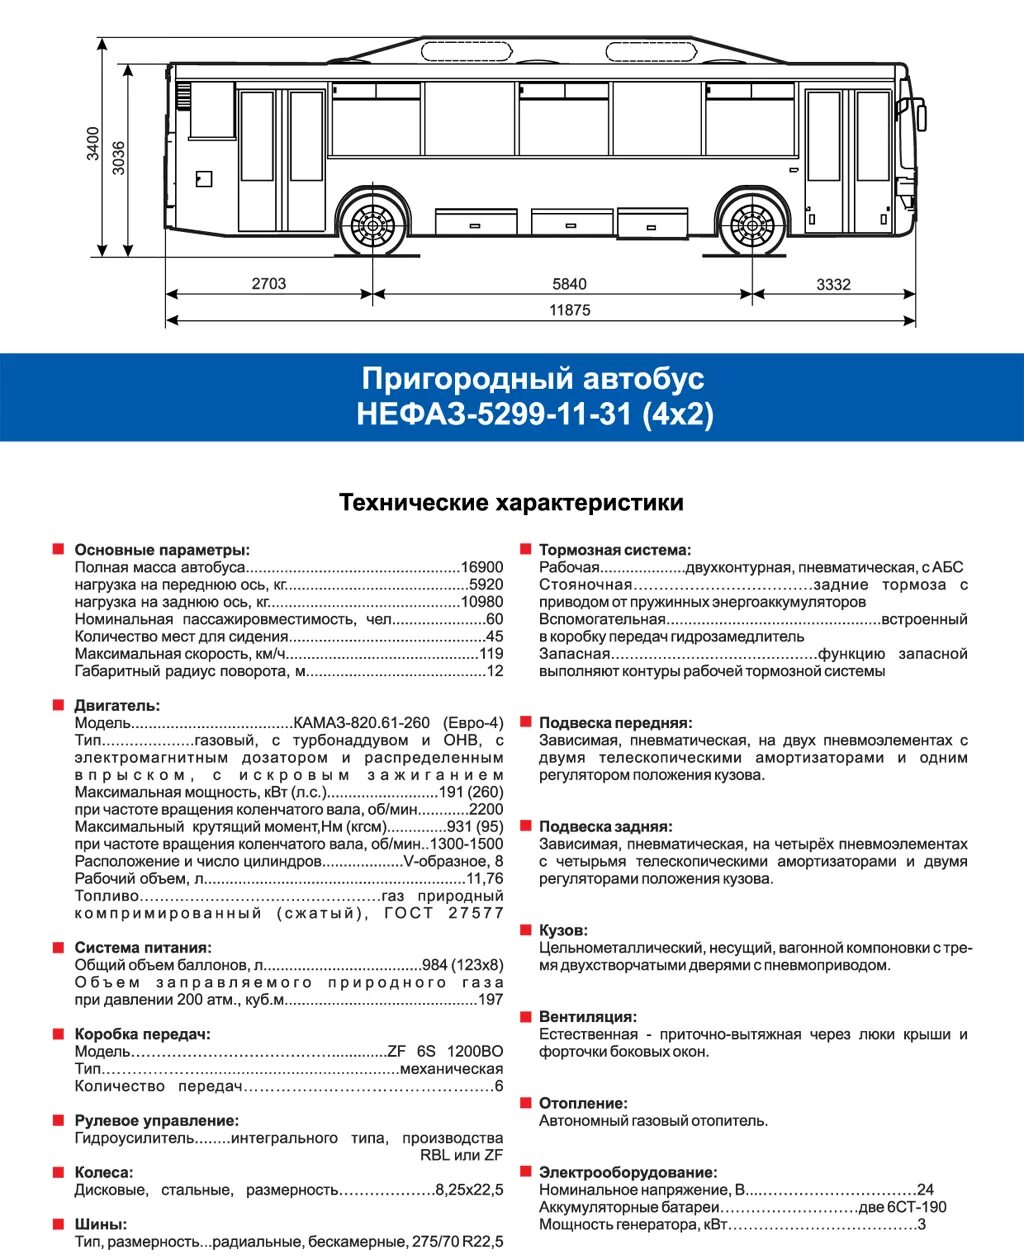 Технические характеристики автобуса паз. НЕФАЗ-5299 автобус параметры. Автобус КАМАЗ НЕФАЗ ТТХ. Автобус НЕФАЗ 5299 технические характеристики двигателя. Заправочные емкости НЕФАЗ 5299-11-32.